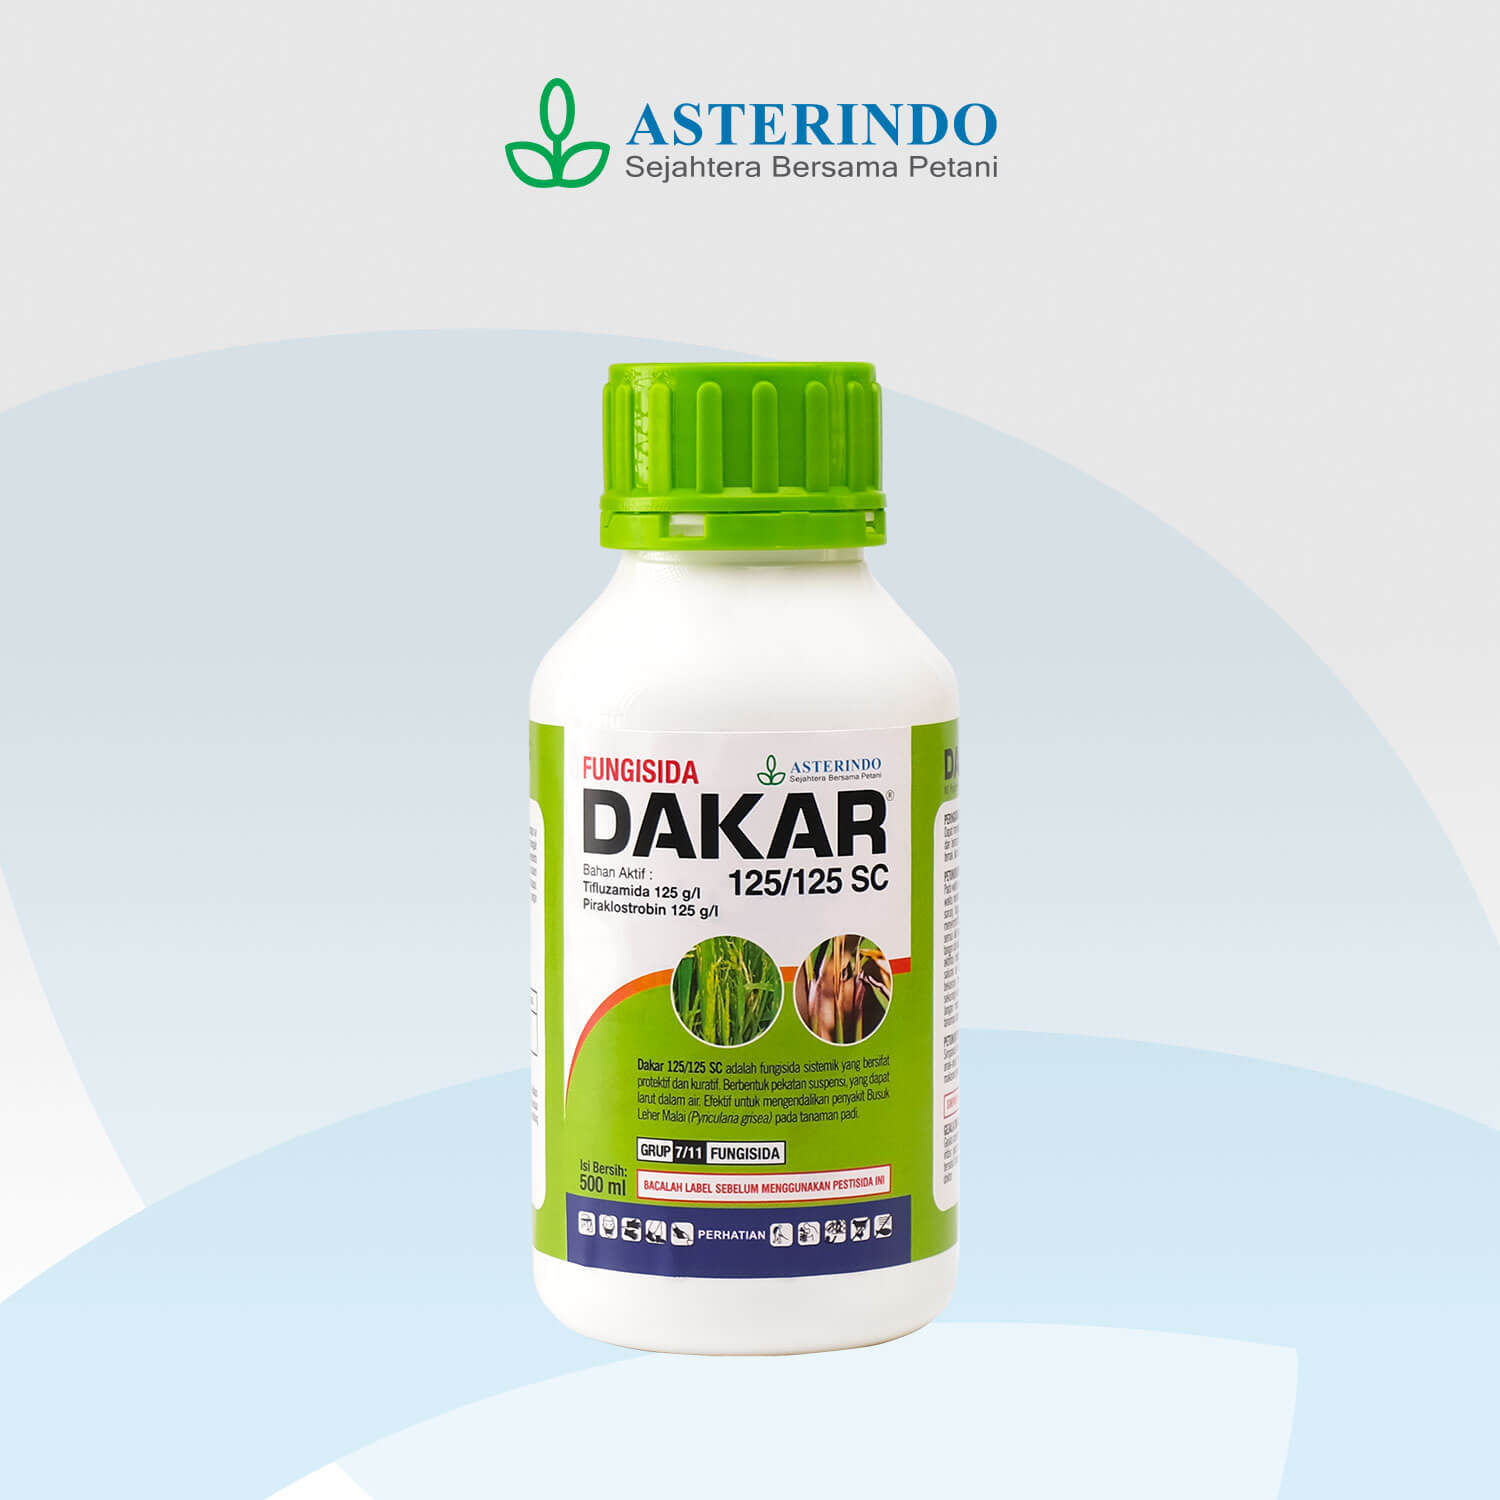 DAKAR-fungisida-Asterindo